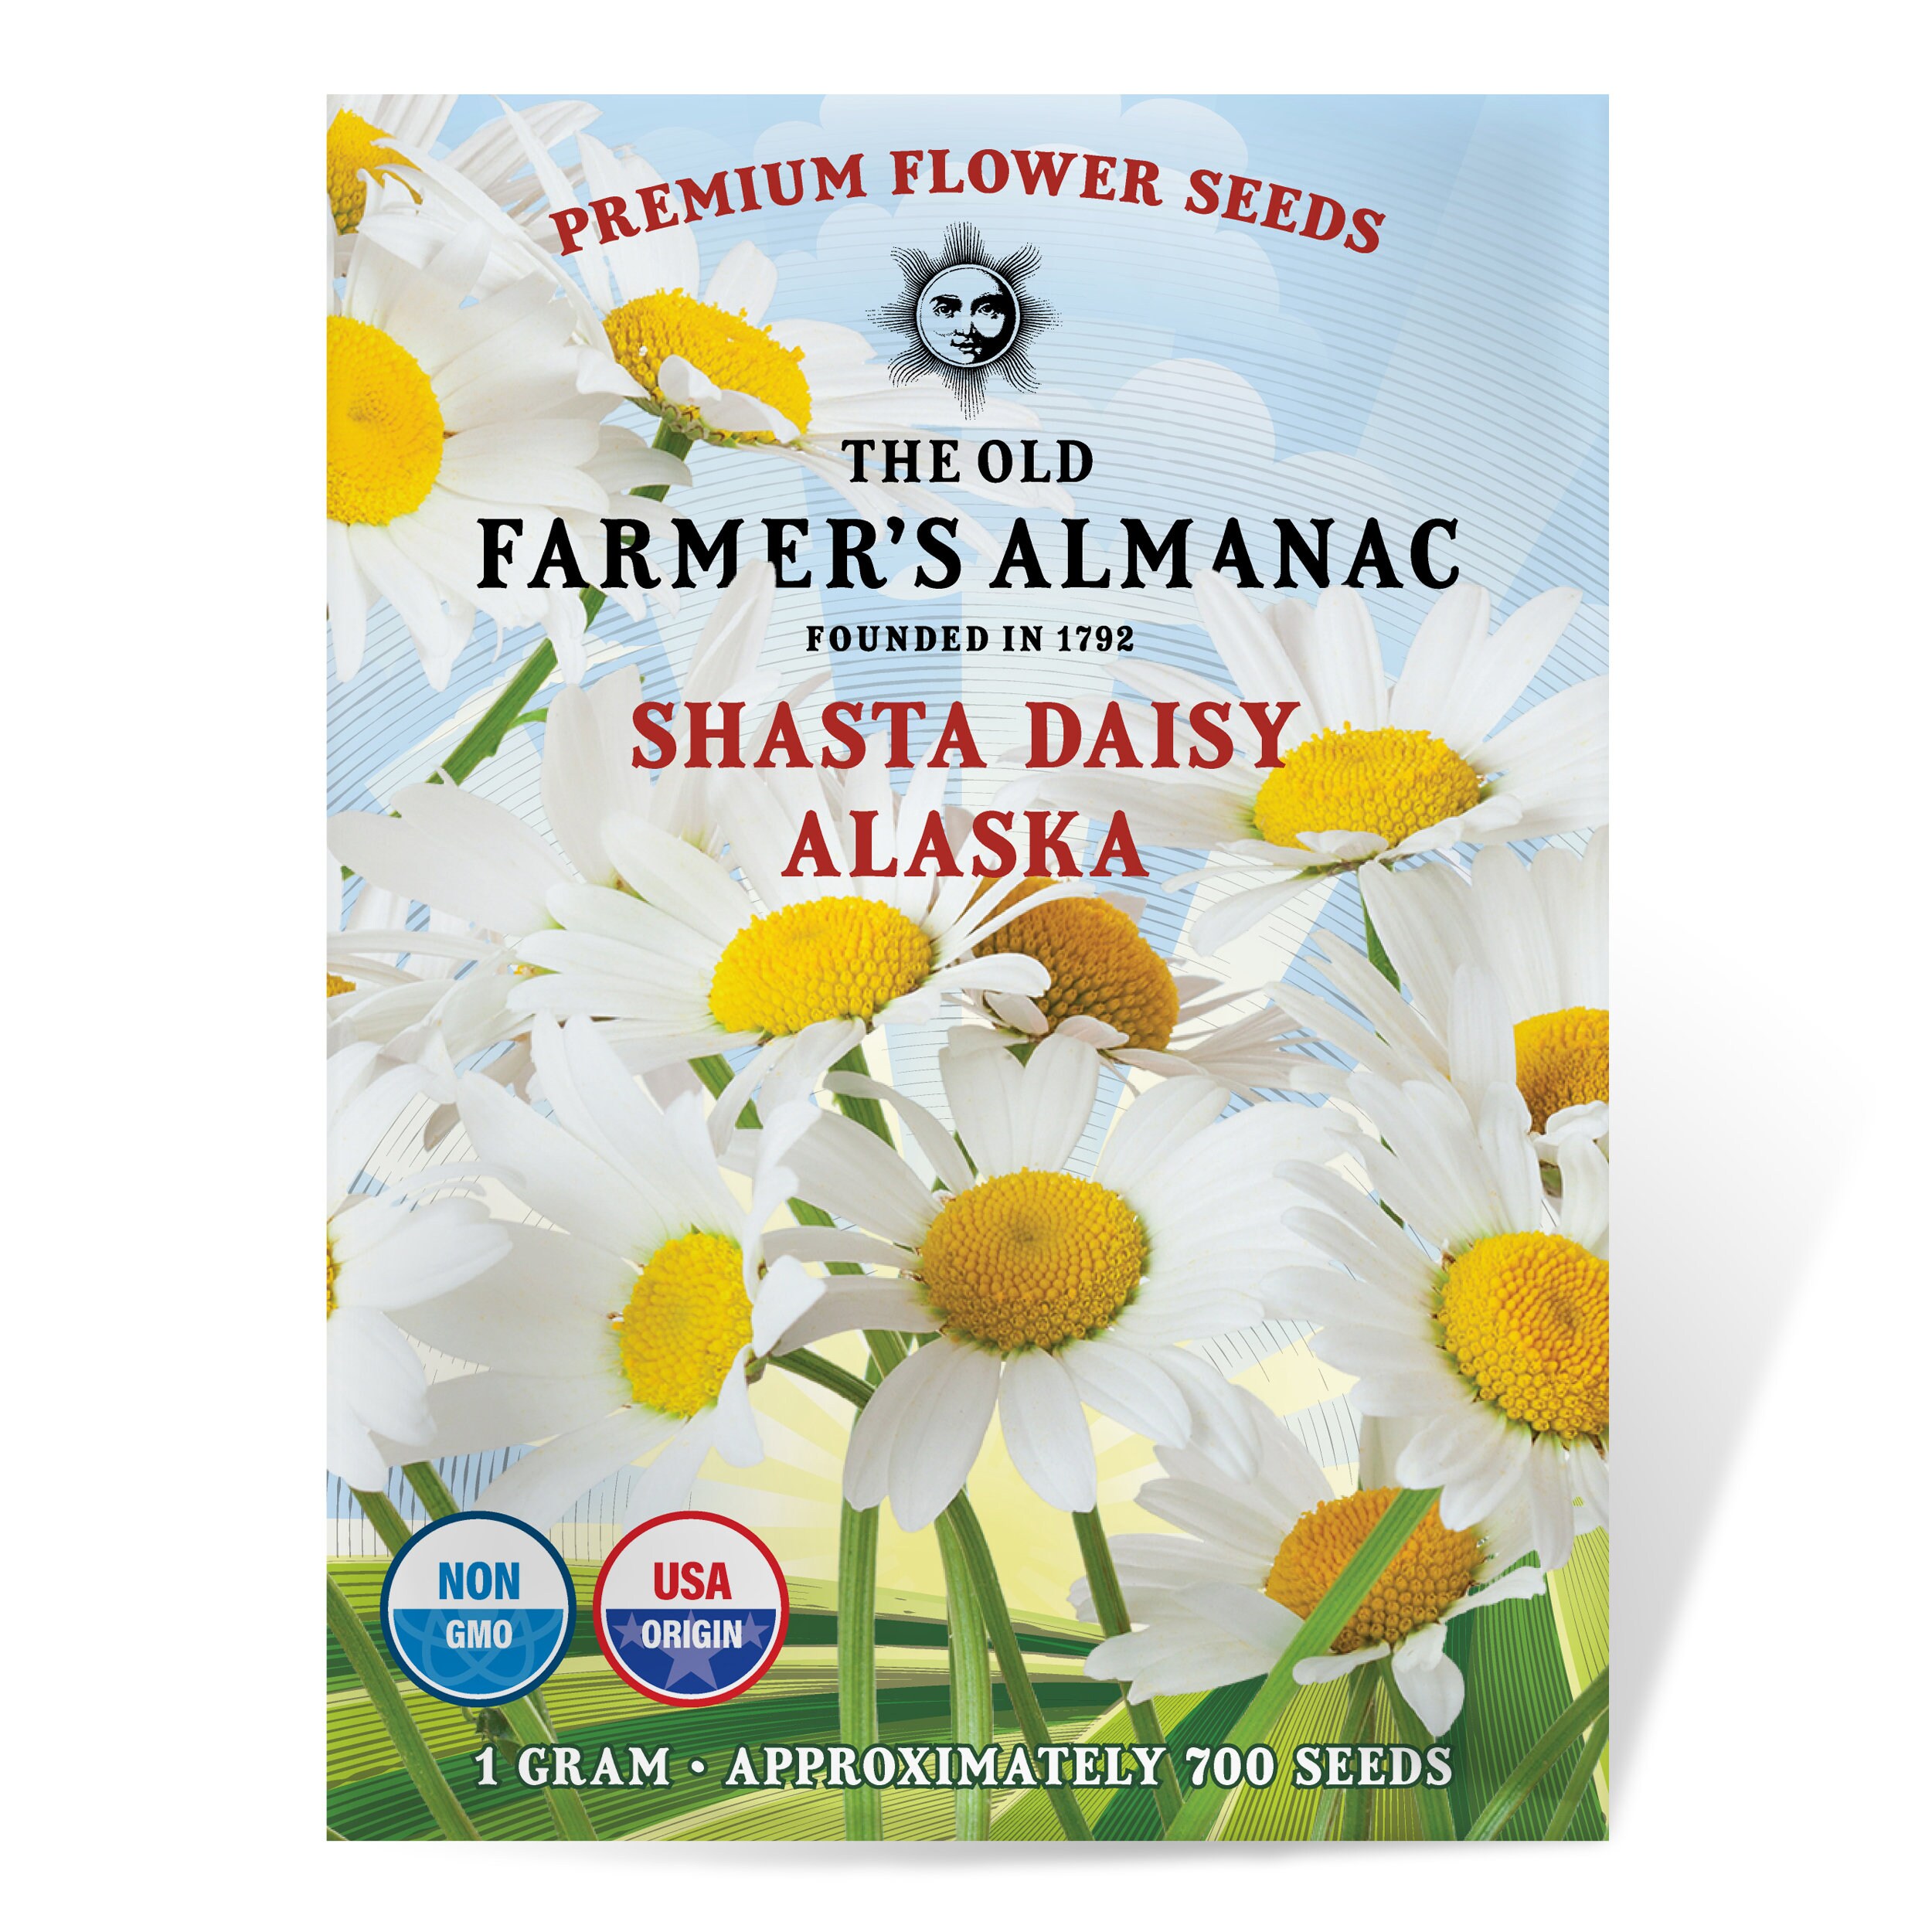 The Old Farmer's Almanac Premium Flower Garden Starter Kit with